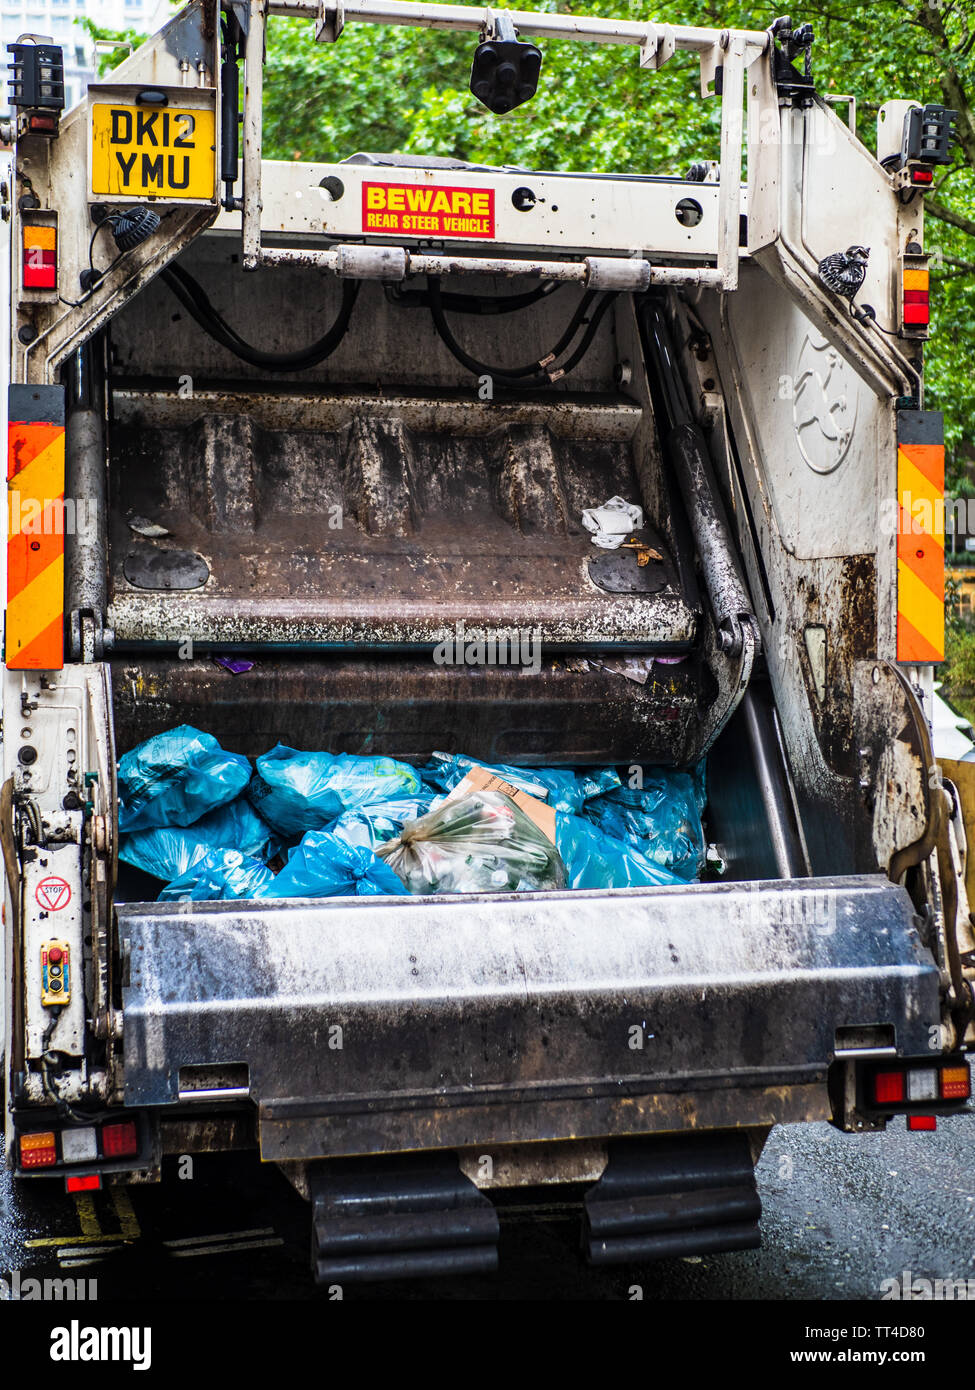 La collecte de déchets par camion ou camion benne Camion Poubelle Londres Londres - ramasser des déchets dans le centre de Londres. Refuser Sac Collection. Collection de sacs poubelle. Banque D'Images